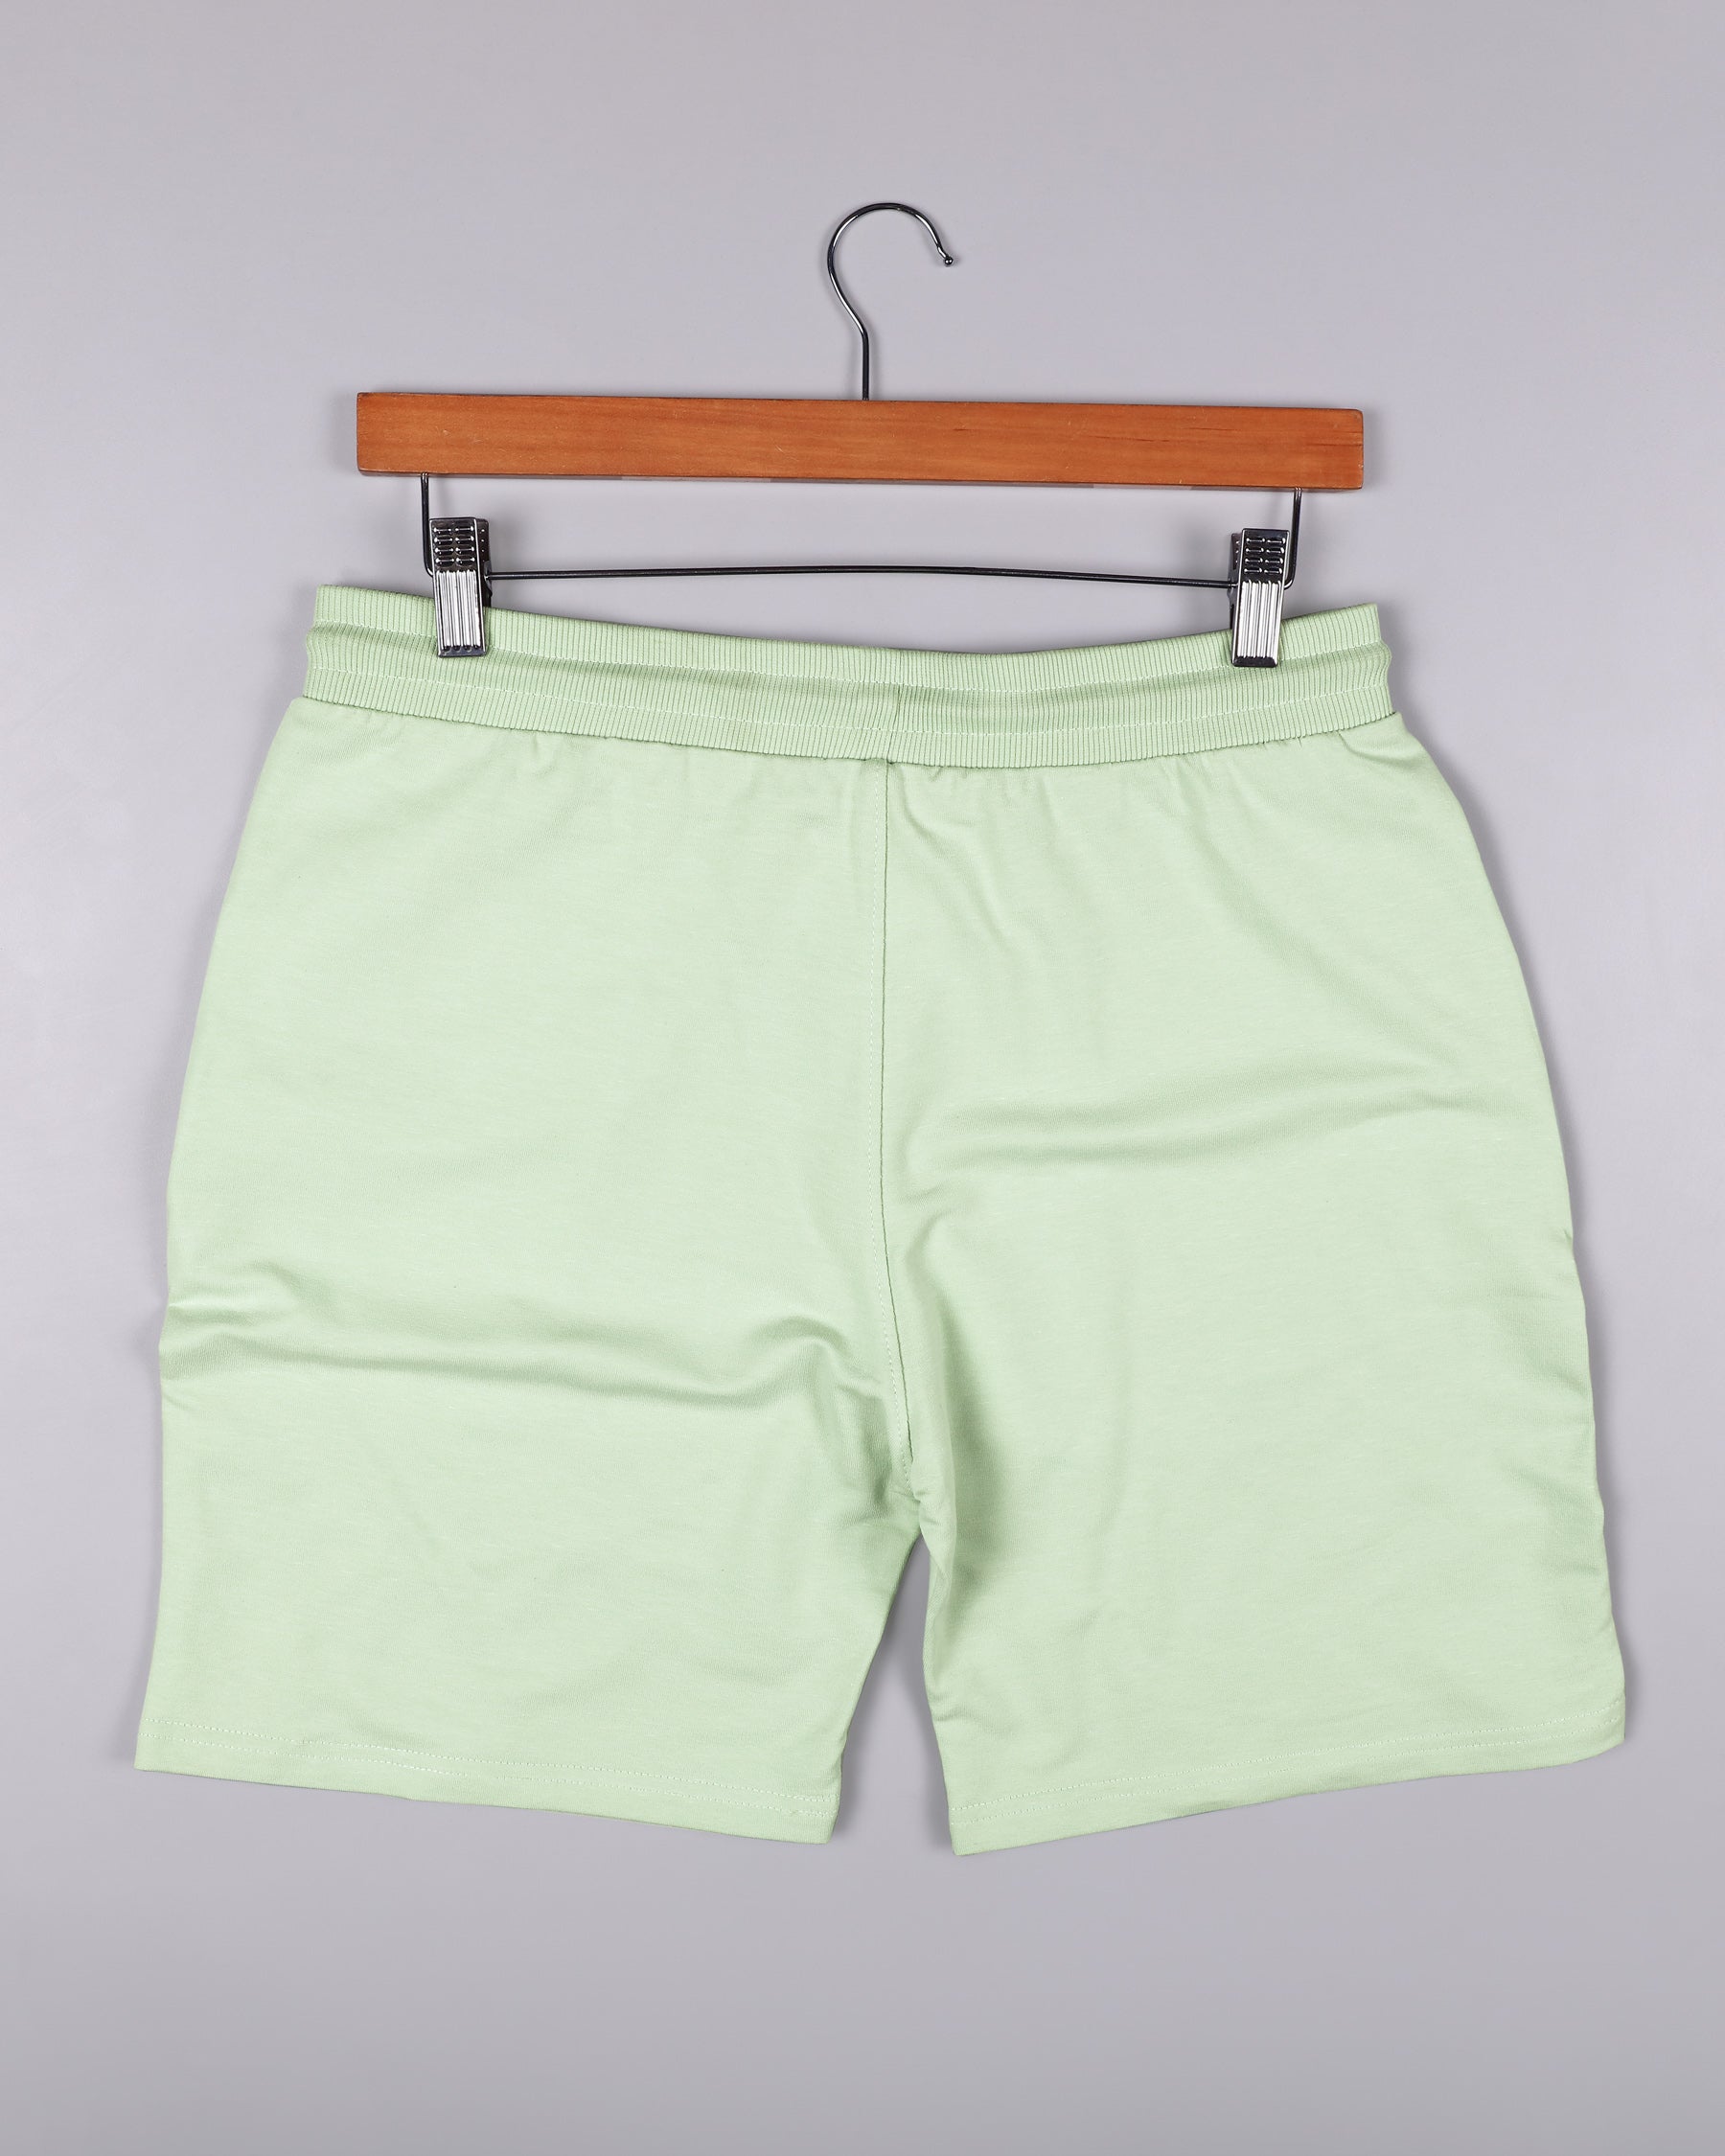 Beryl Green Premium Cotton Swim Shorts SR94-38, SR94-40, SR94-42, SR94-44, SR94-28, SR94-30, SR94-32, SR94-34, SR94-36